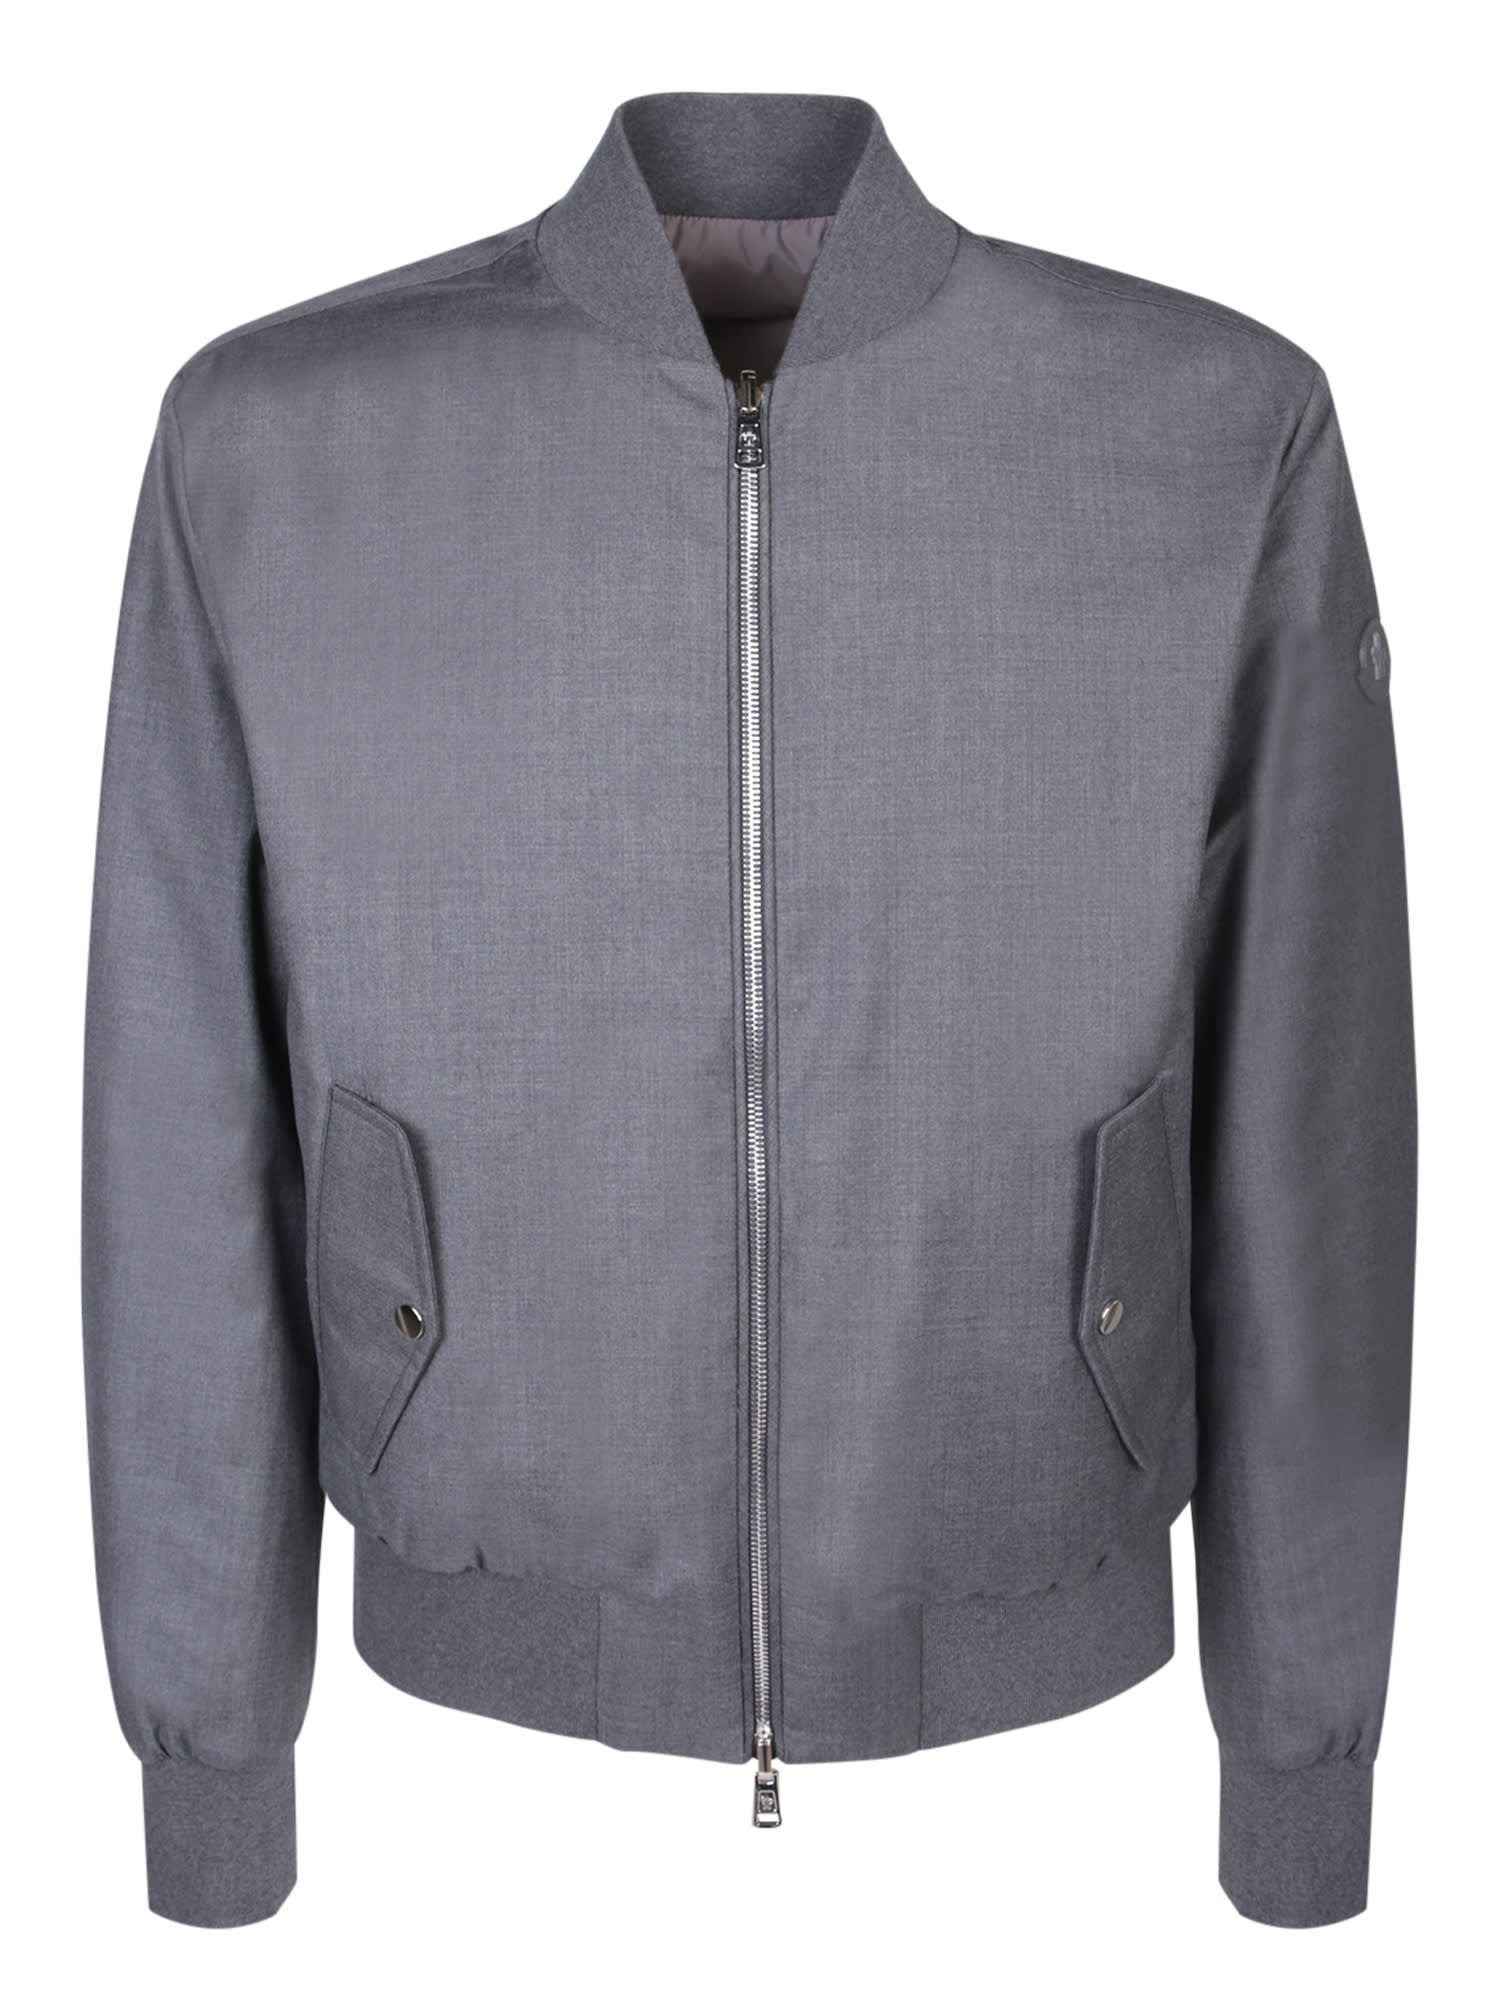 Aver Bomber Grey Jacket